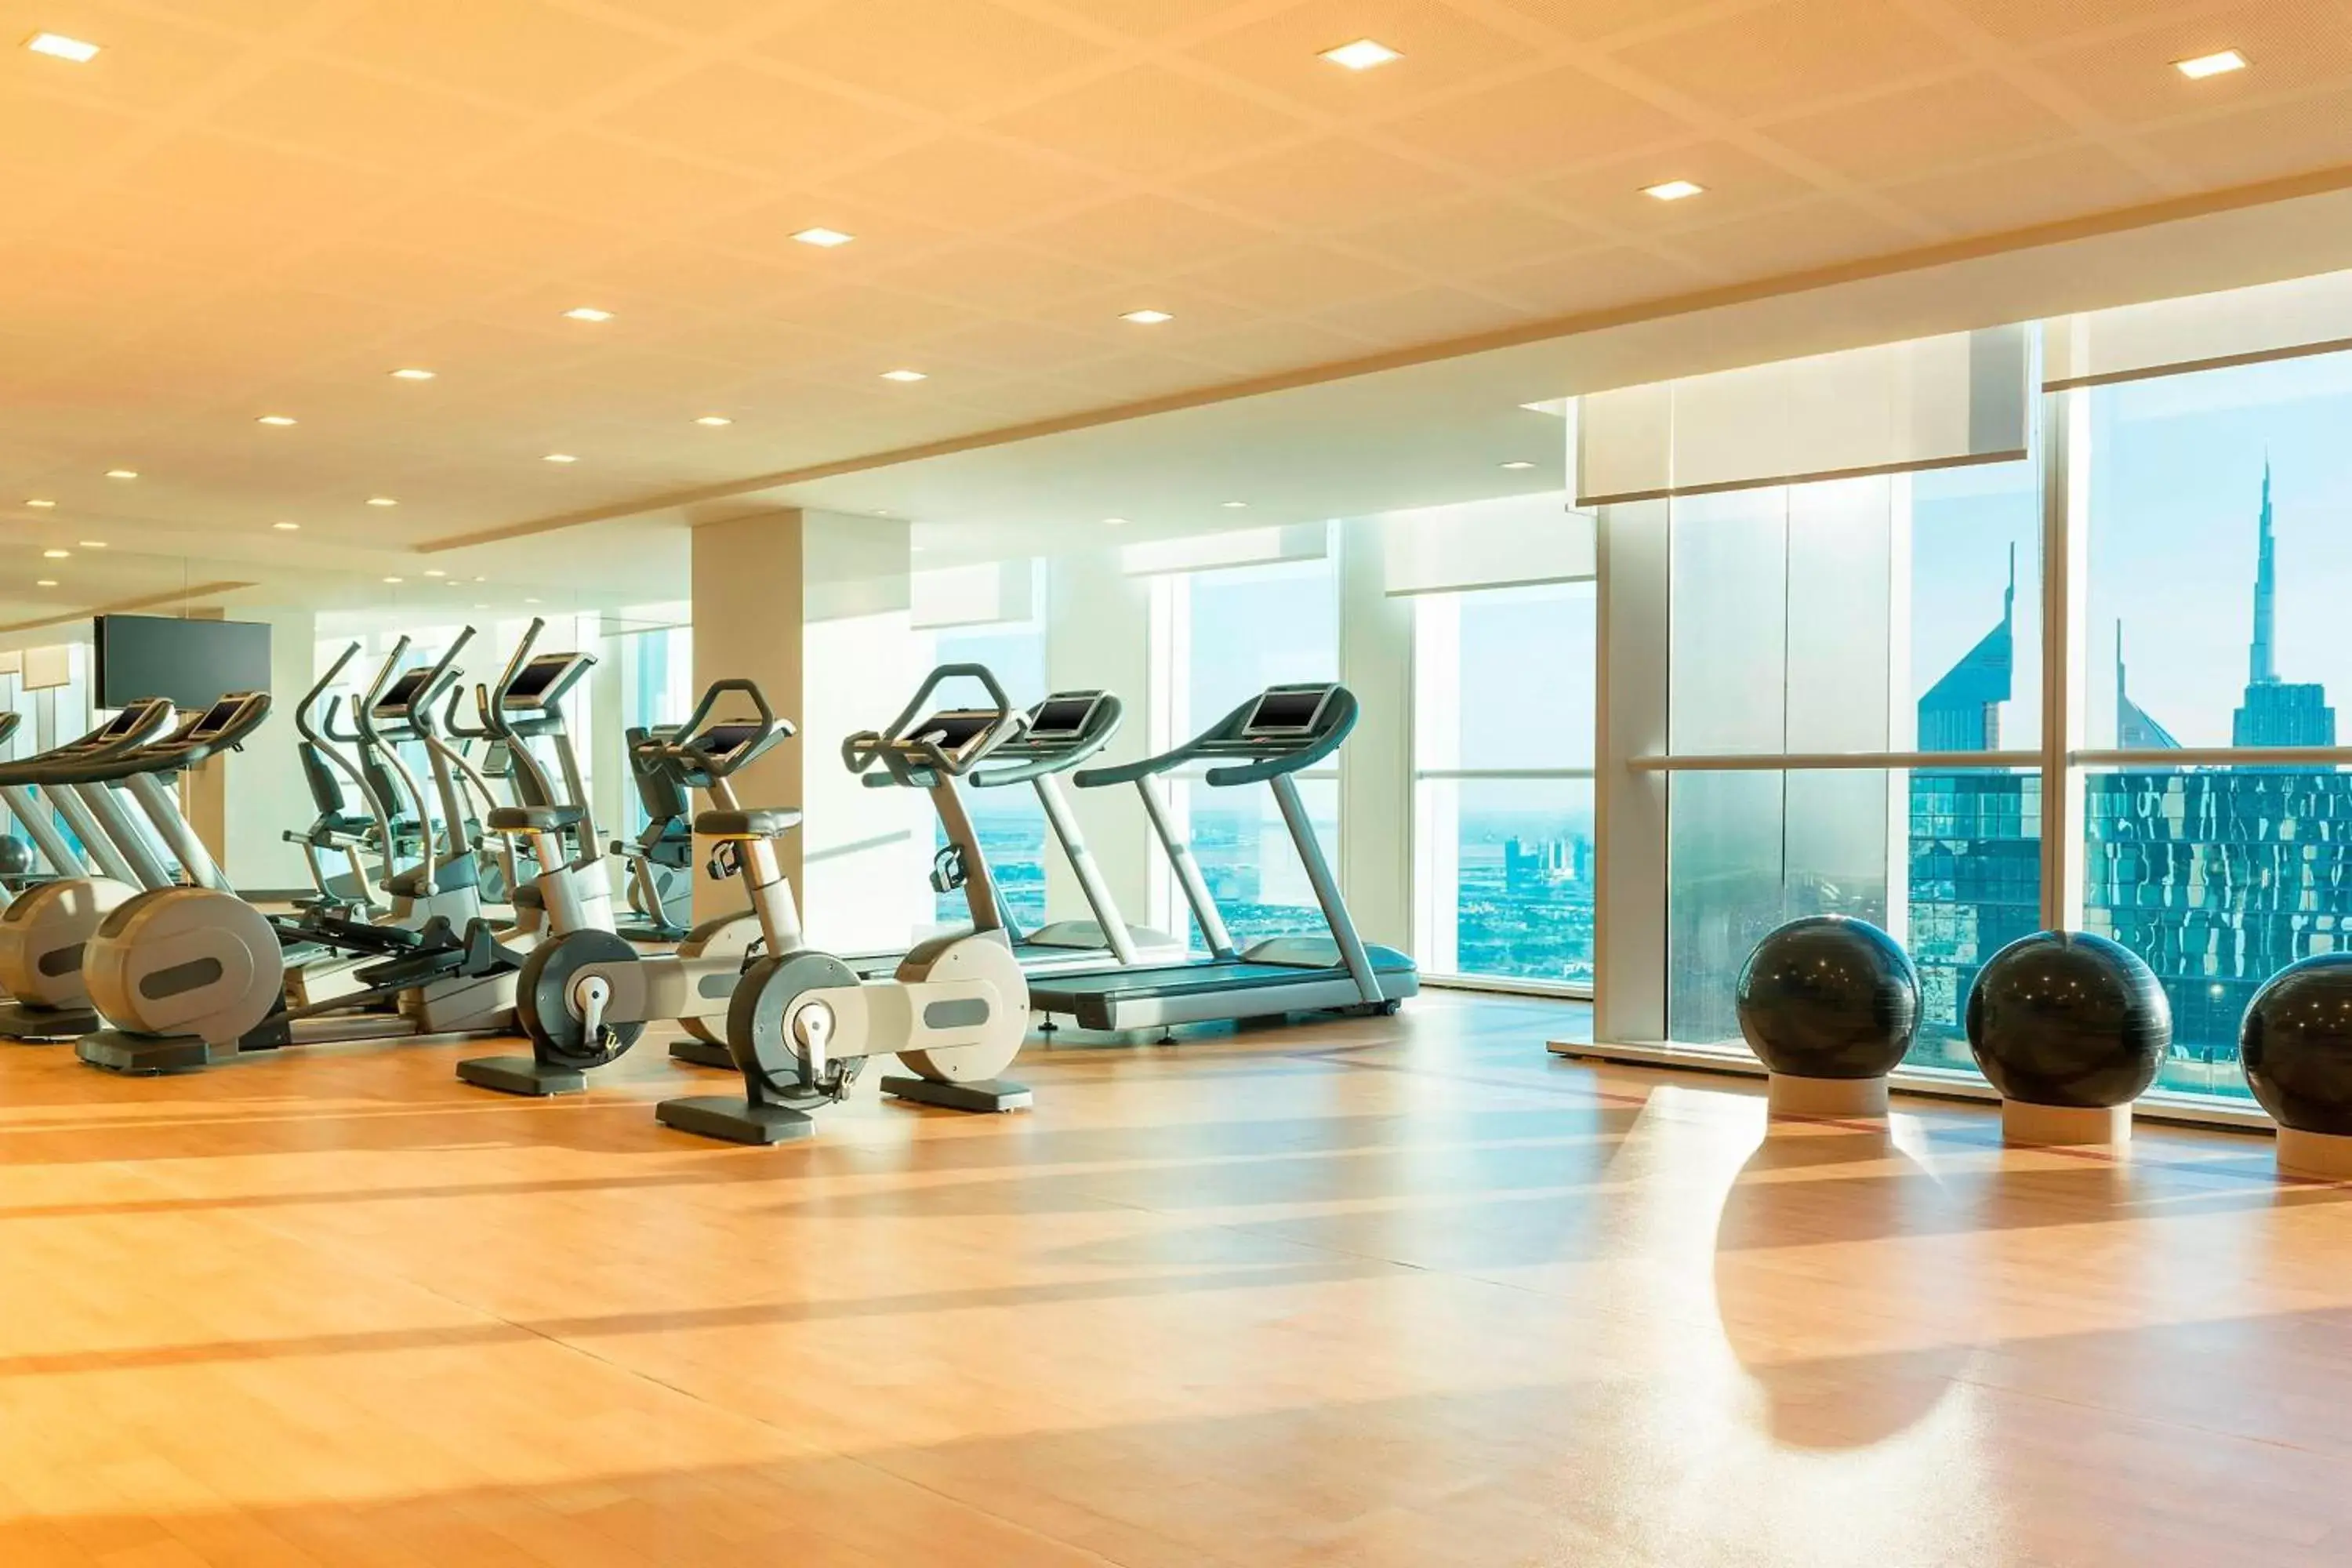 Fitness centre/facilities, Fitness Center/Facilities in Sheraton Grand Hotel, Dubai